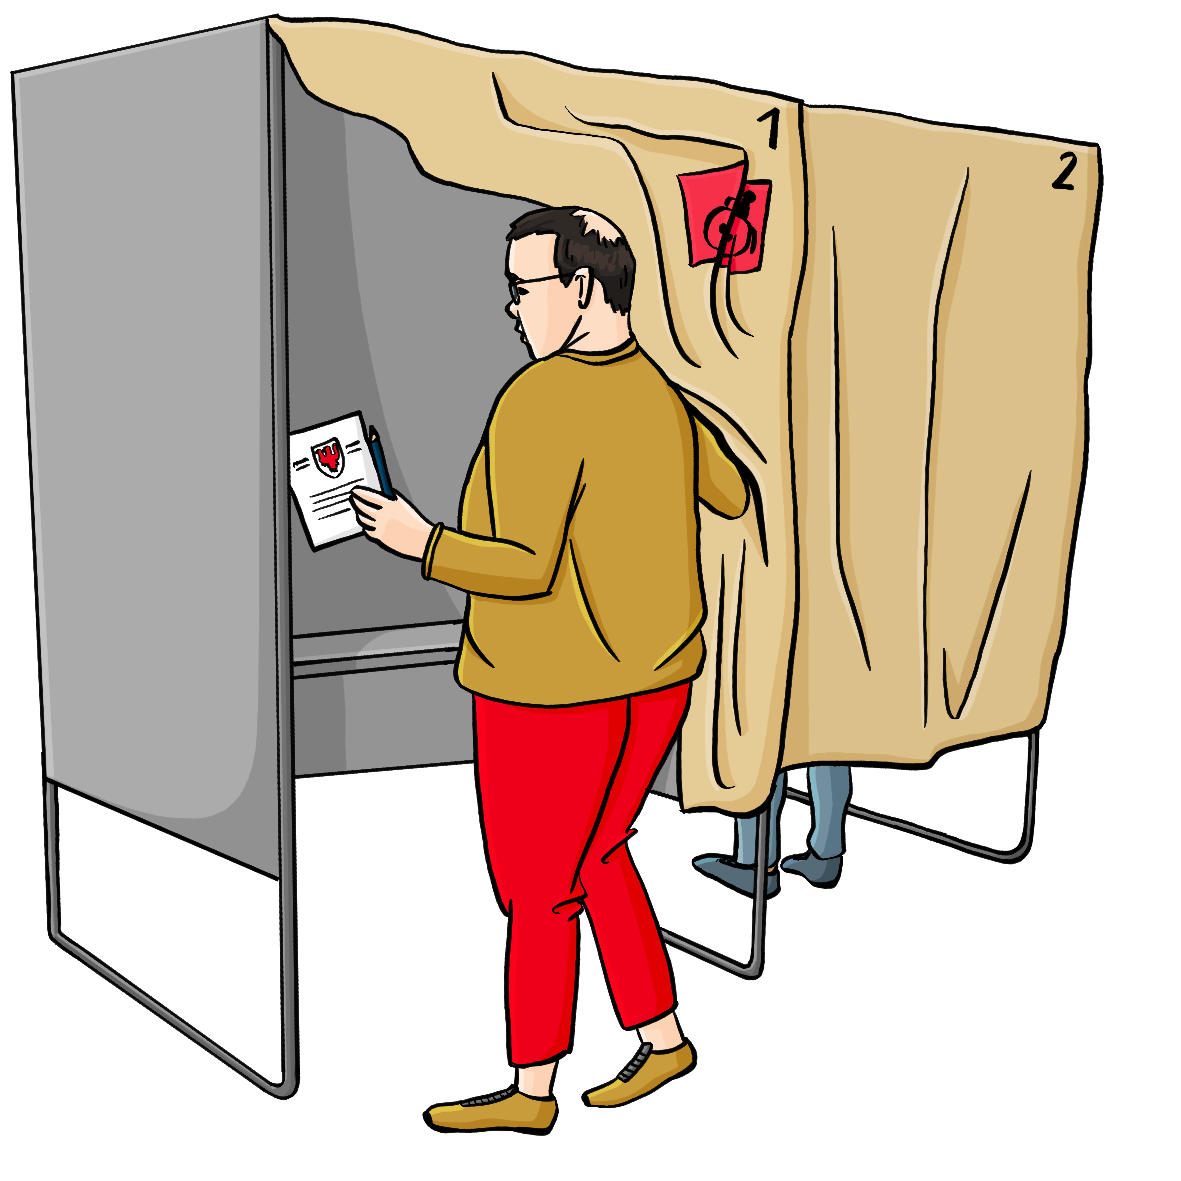 Zwei Wahlkabinen. Ein Mann geht in die linke Wahlkabine hinein. Er hält den Vorhang zur Seite, der die Kabine bedeckt. In der Hand hält er einen Stimmzettel.